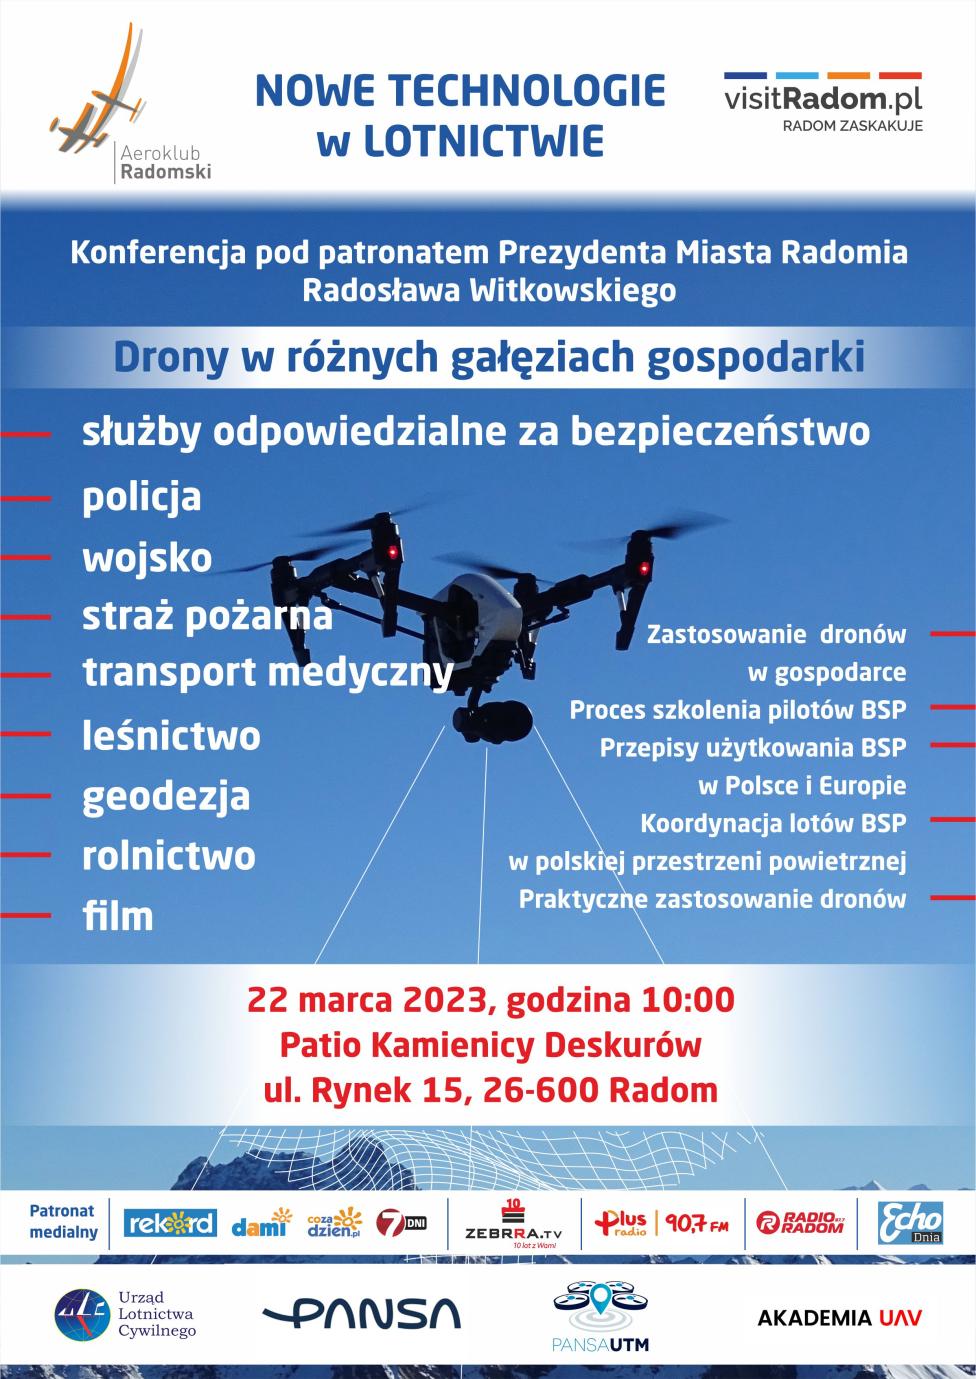 Konferencja "Nowe Technologie w lotnictwie" (fot. Aeroklub Radomski)